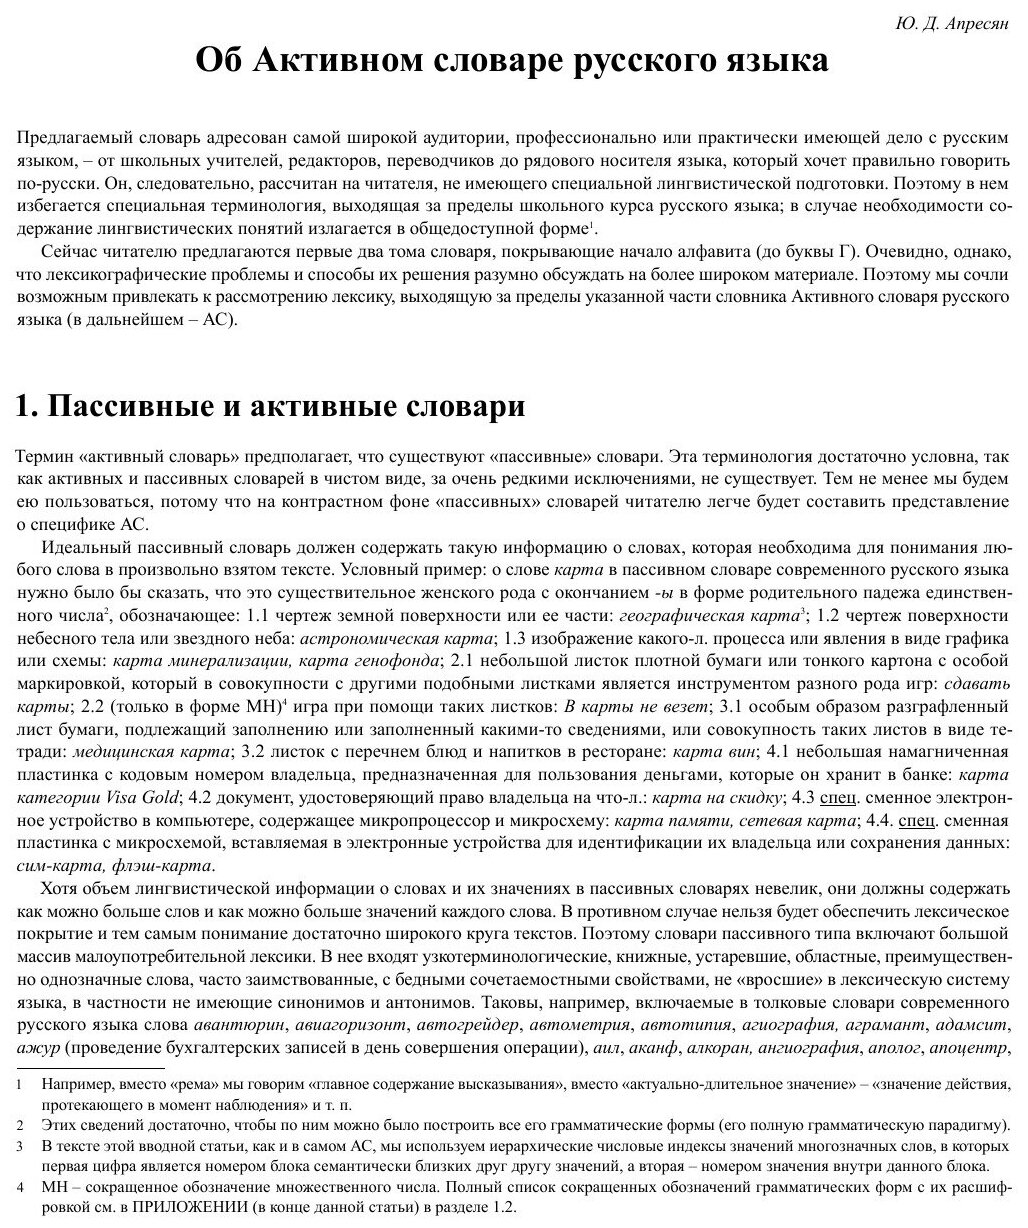 Активный словарь русского языка. Том 1. А-Б - фото №5